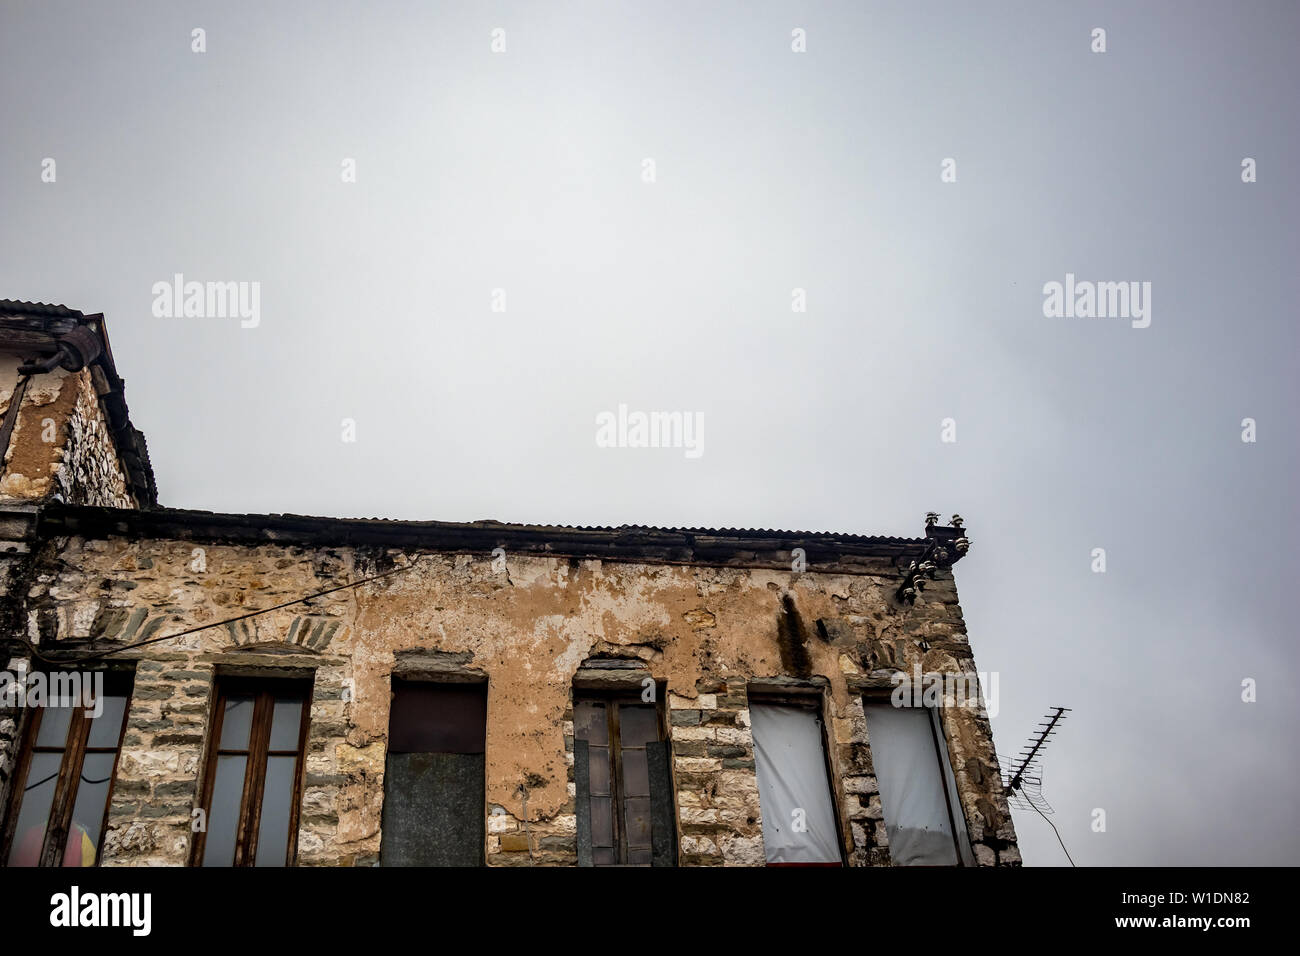 Alte griechische industrielle Gebäude im Bau mit Ziegel sichtbar, in der Innenstadt von Ioannina, Griechenland. Moody foggy Frühling Morgen, keine Menschen, Rusty TV-Antenne Silhouette Stockfoto